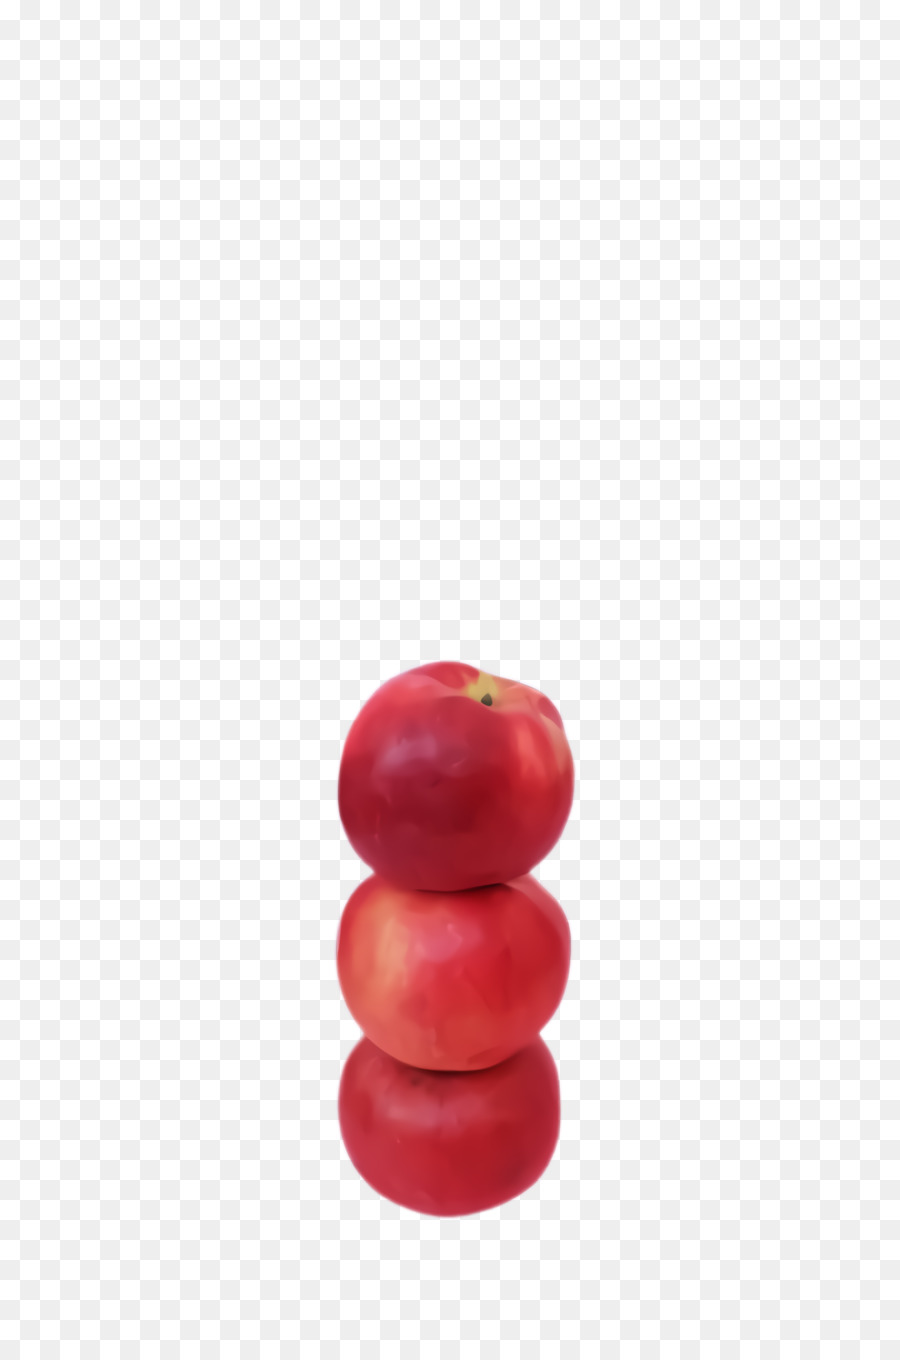 roter Fruchtkirschpflanzenbaum - 